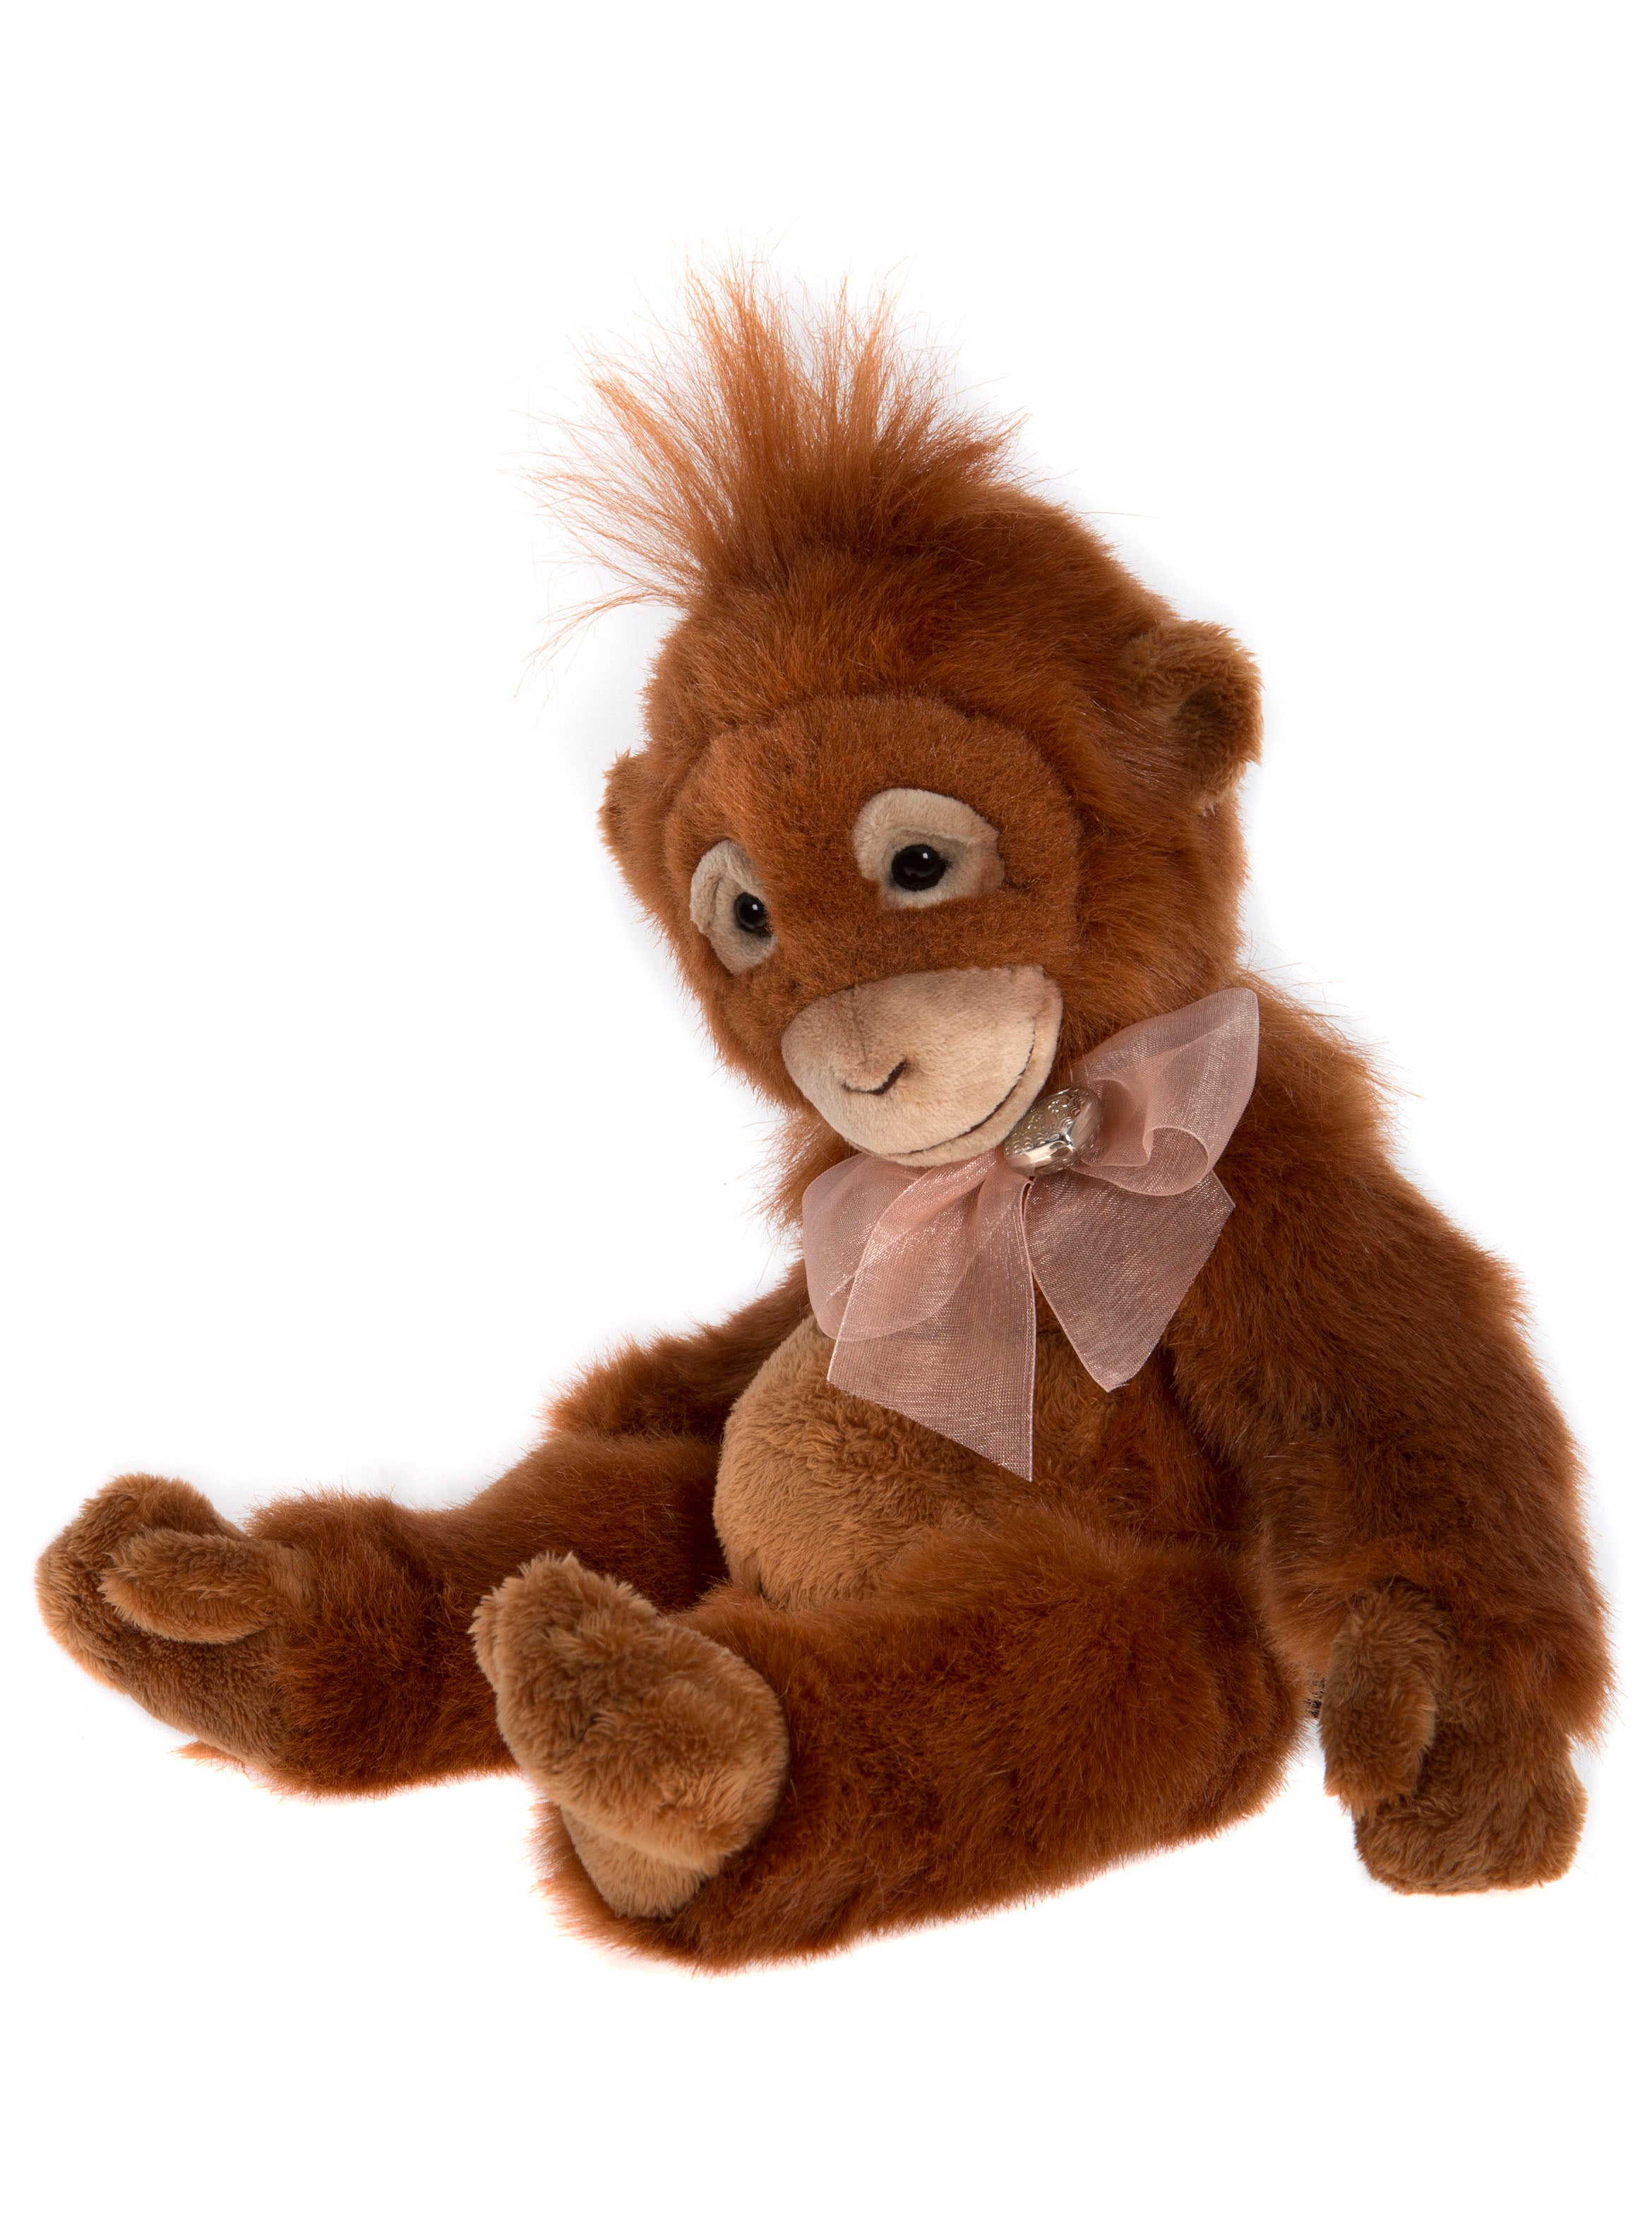 orangutan teddy bear